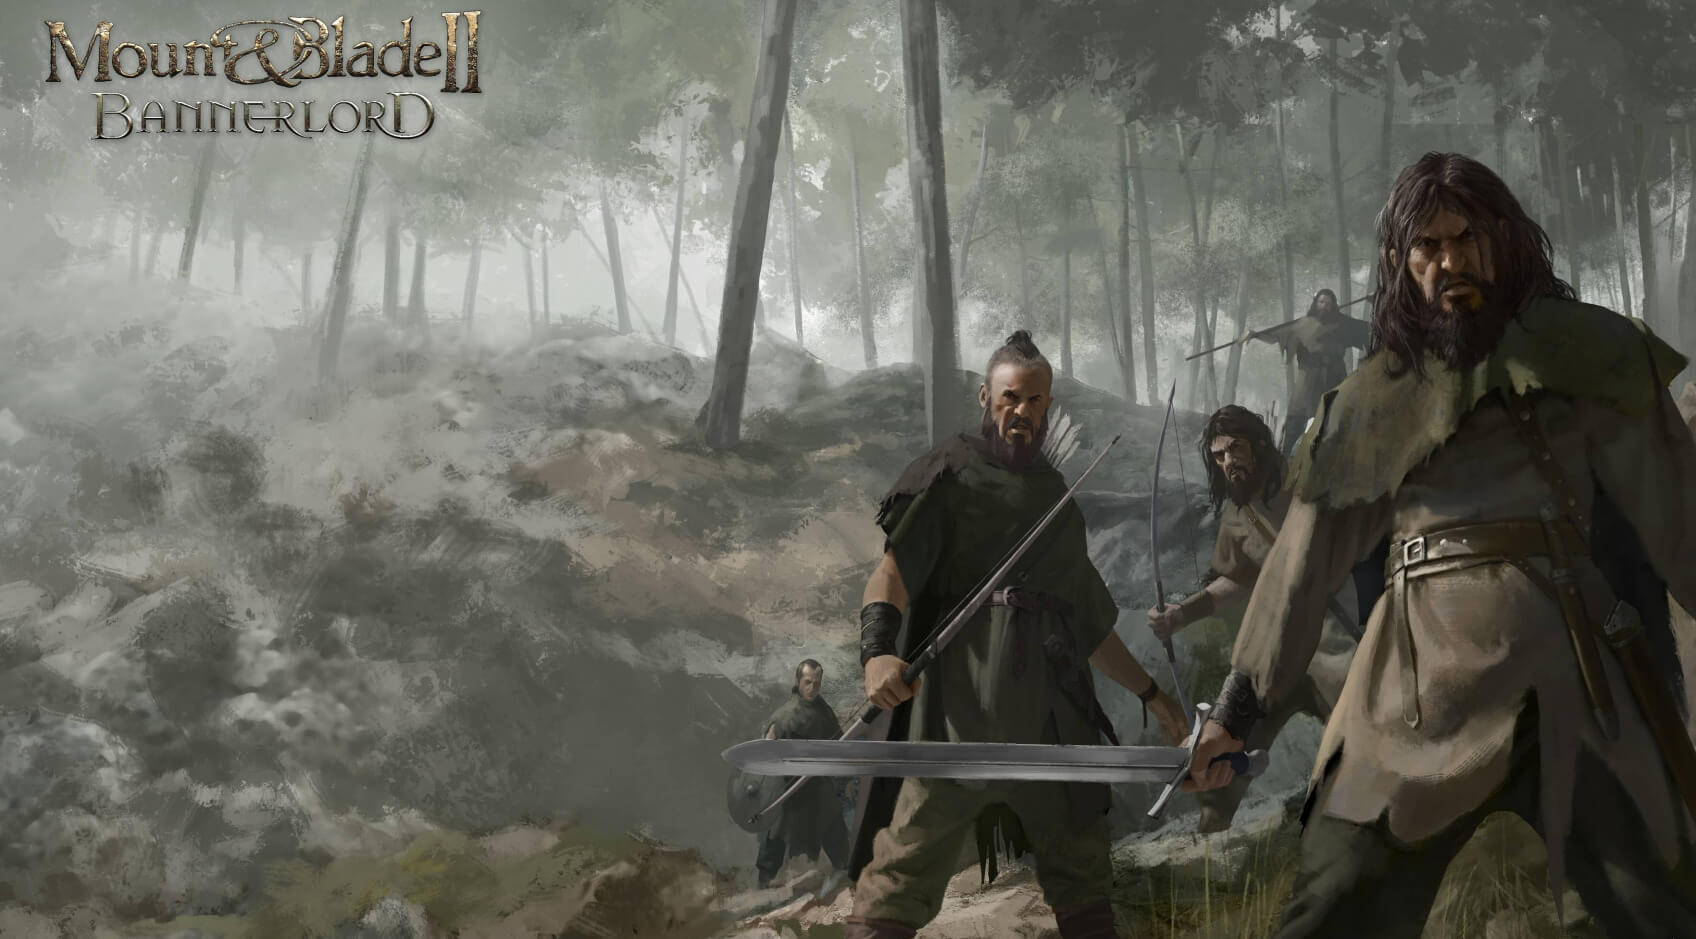 يوجد الآن Dismemberment Mod لـ Mount & Blade II: Bannerlord يمكنك تنزيله 52